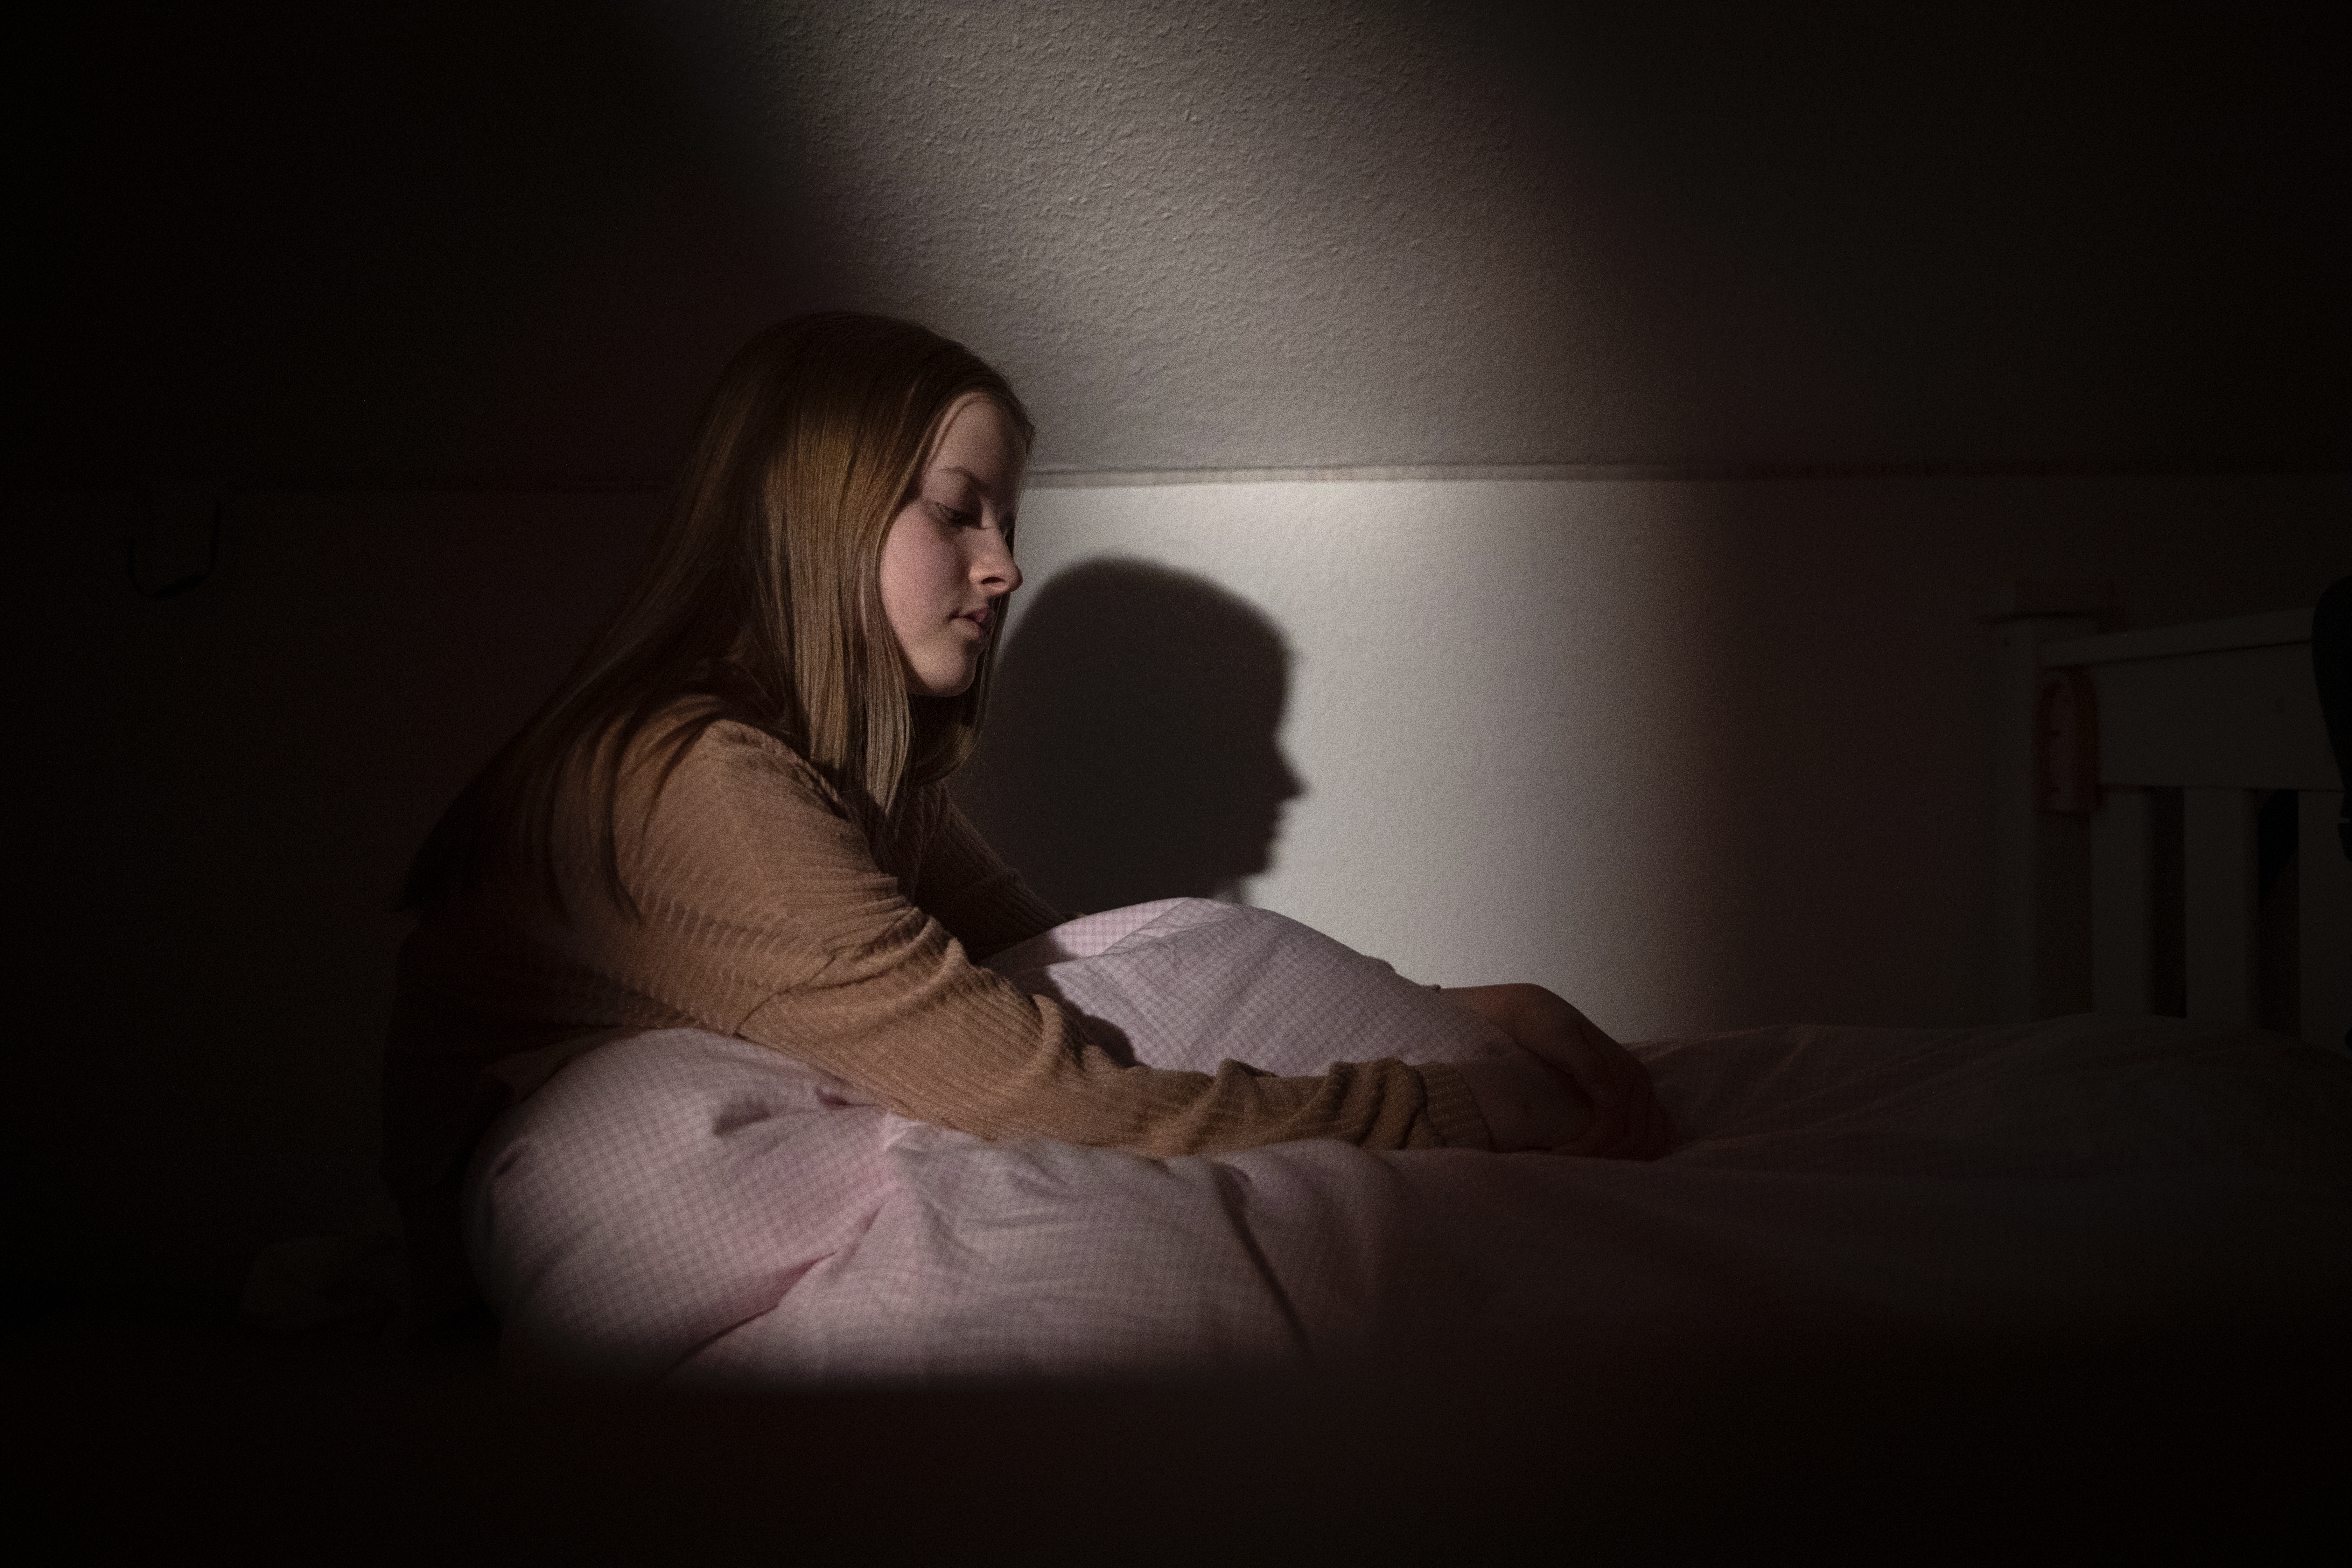 Adolescente sentada en la cama por la noche con poca luz y expresión facial que representa desesperación y tristeza | Foto: Getty Images